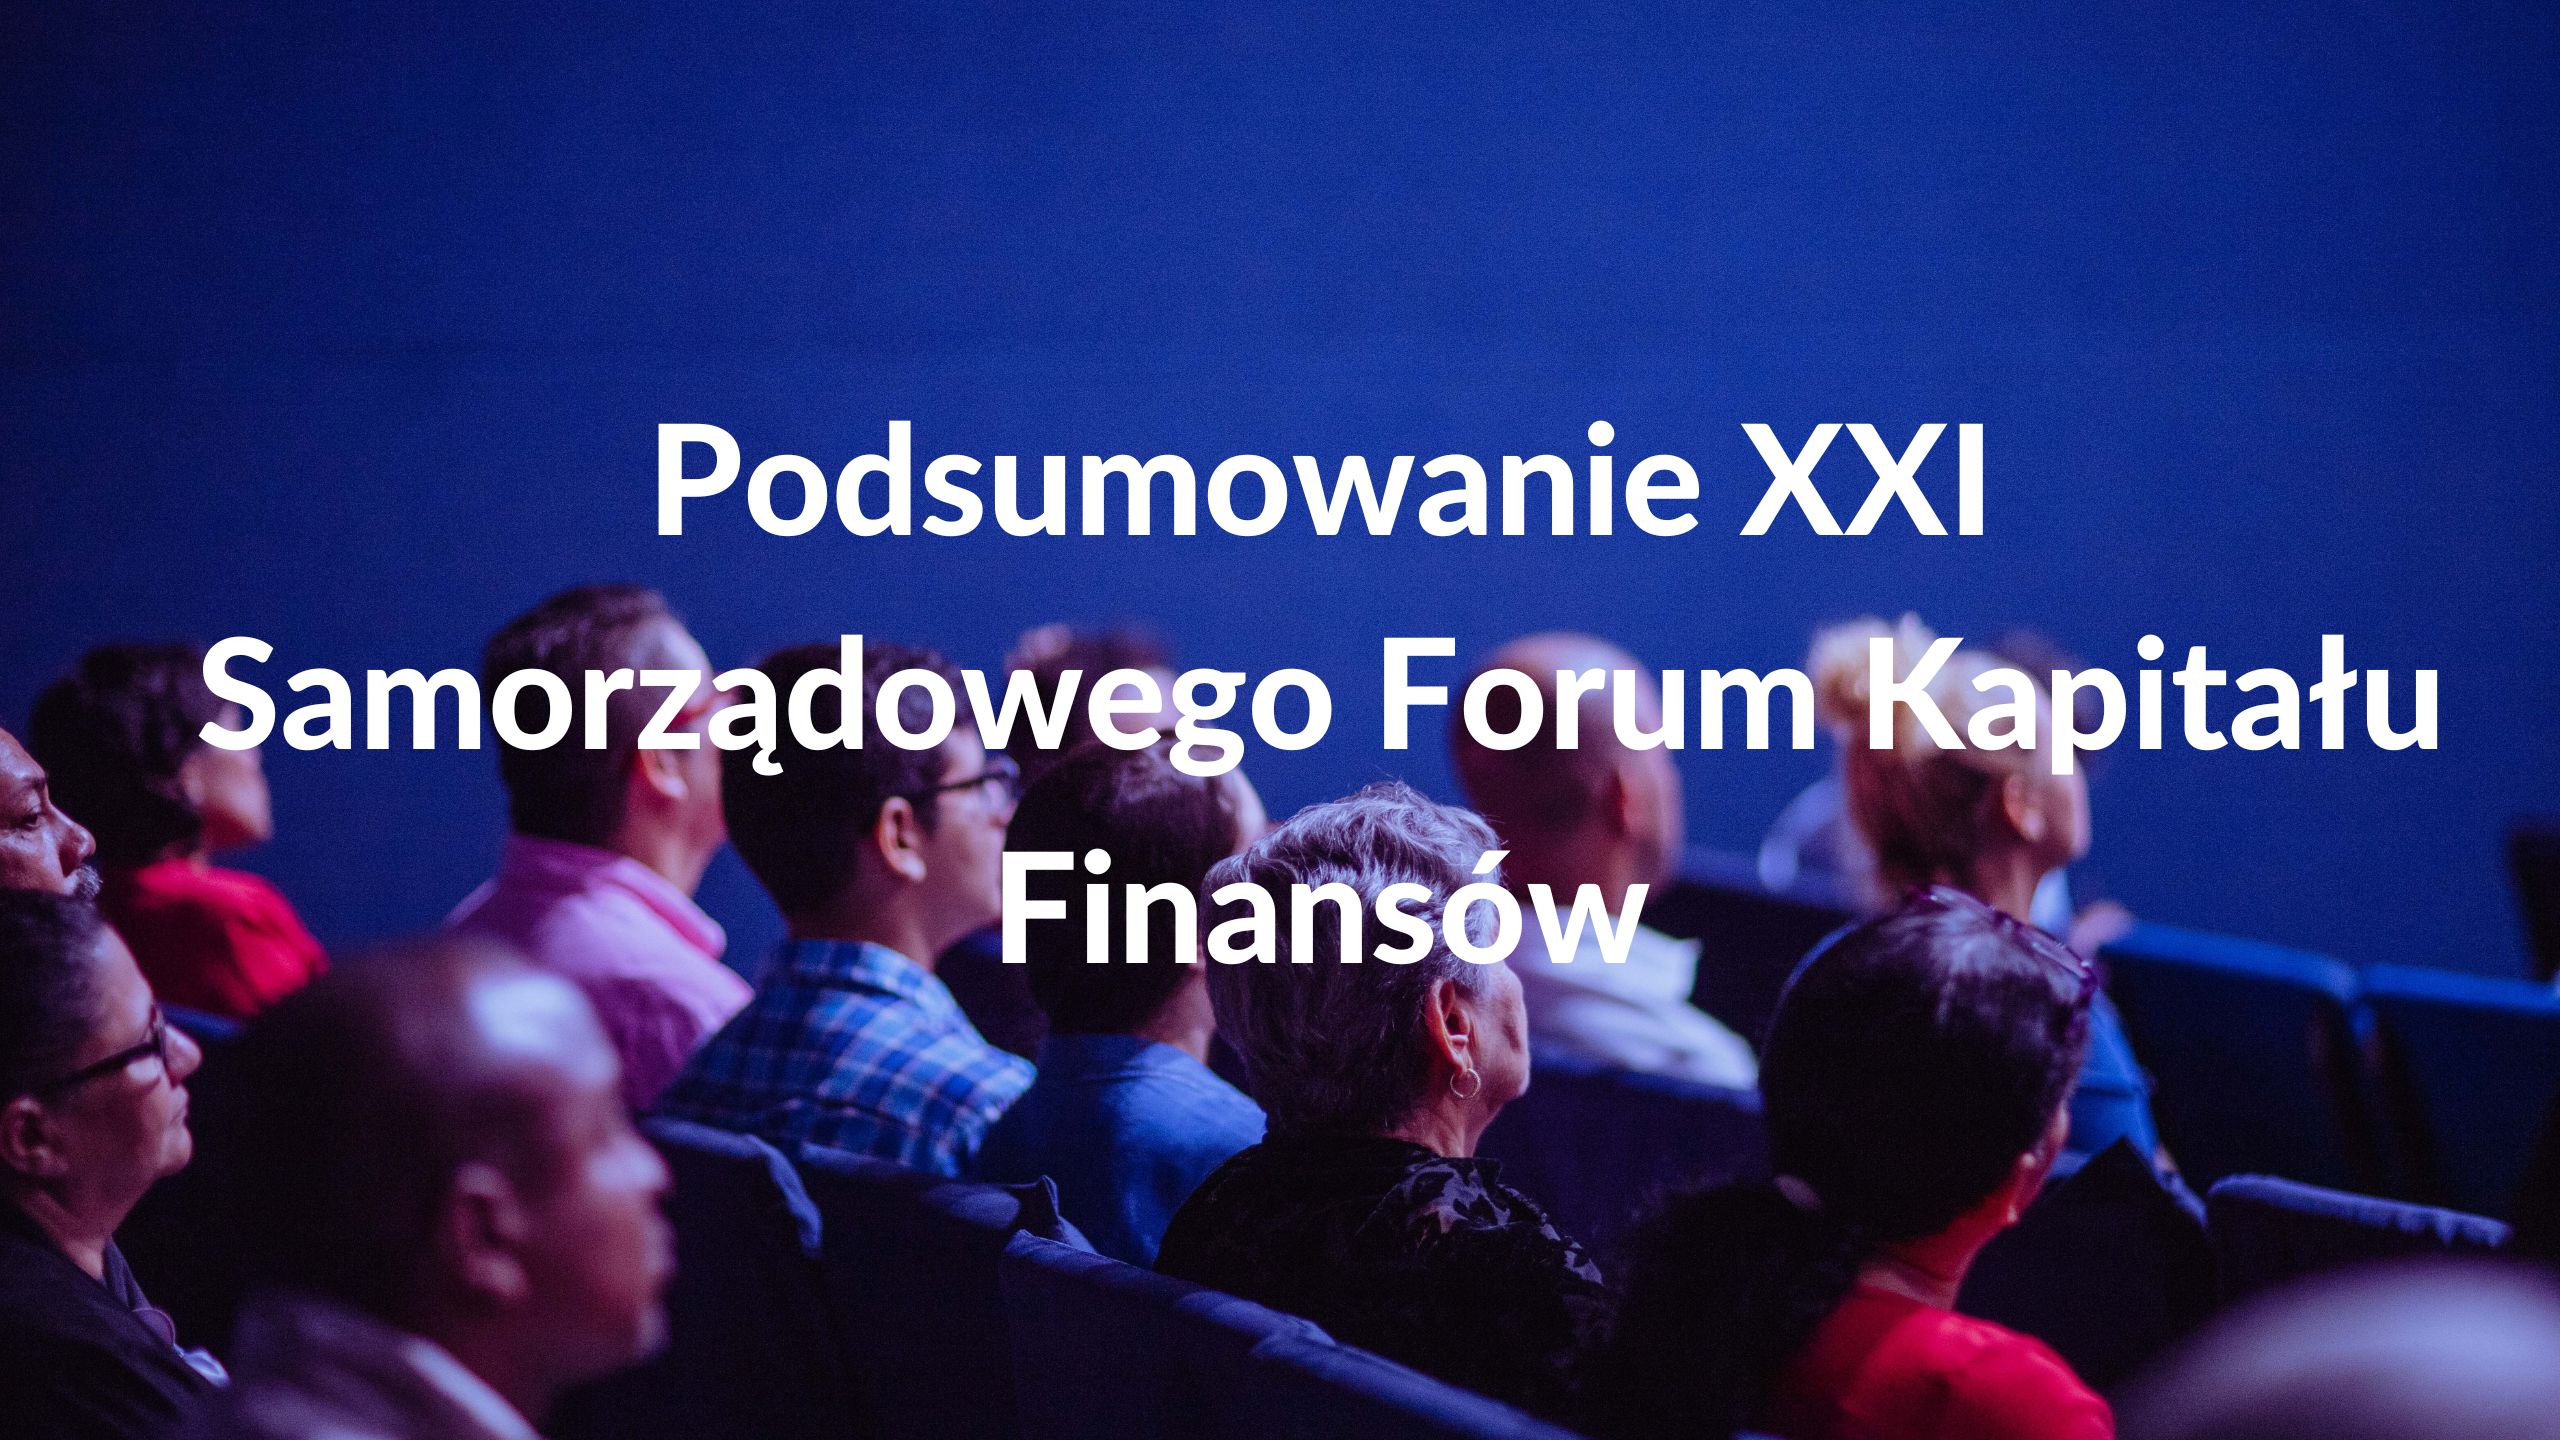 Podsumowanie XXI Samorządowego Forum Kapitału i Finansów